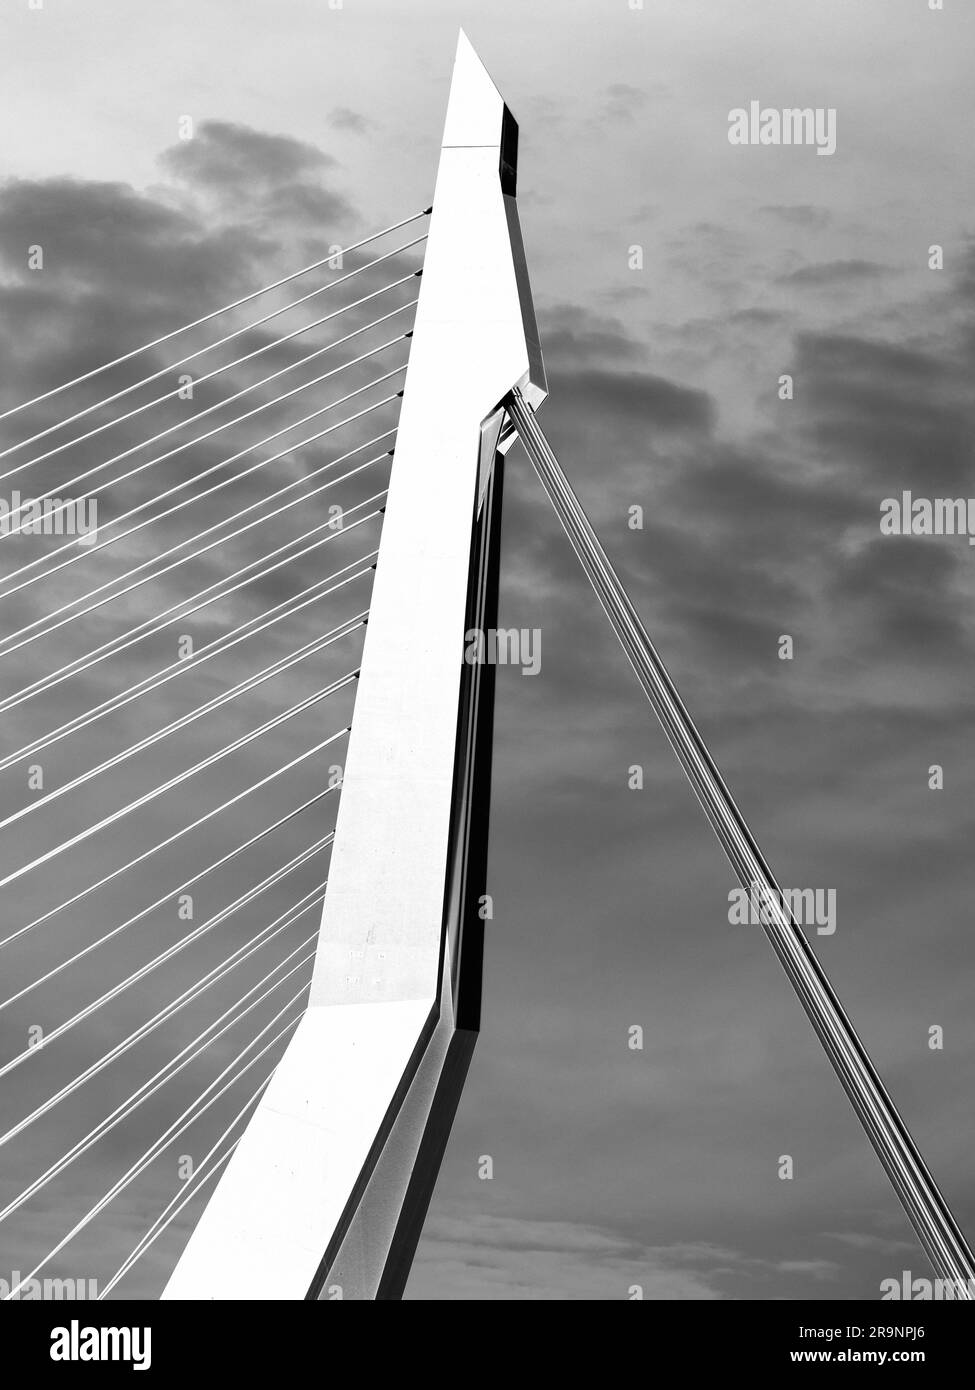 Il nuovo e bellissimo ponte sospeso di Rotterdam si aggiunge notevolmente allo skyline della città, e prende il nome dal grande filosofo e umanista olandese rinascimentale Foto Stock